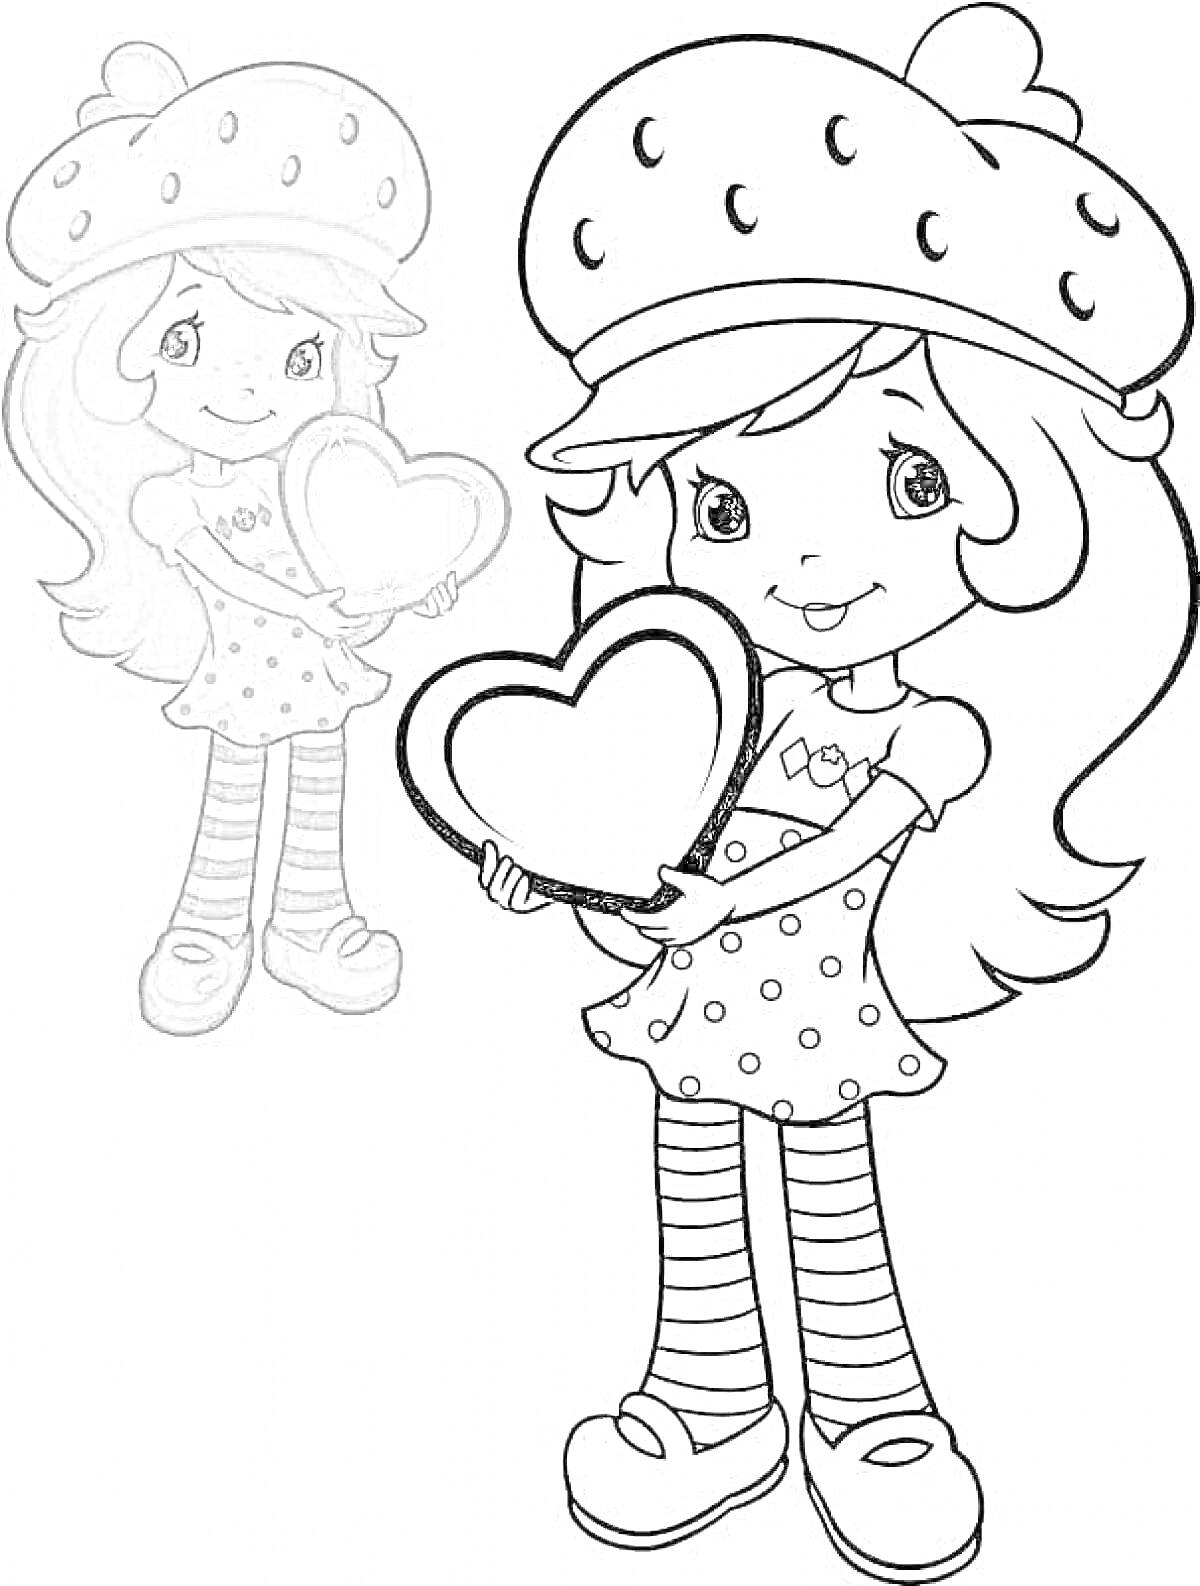 Раскраска Девочка с клубничной шапкой держит сердце и её отражение